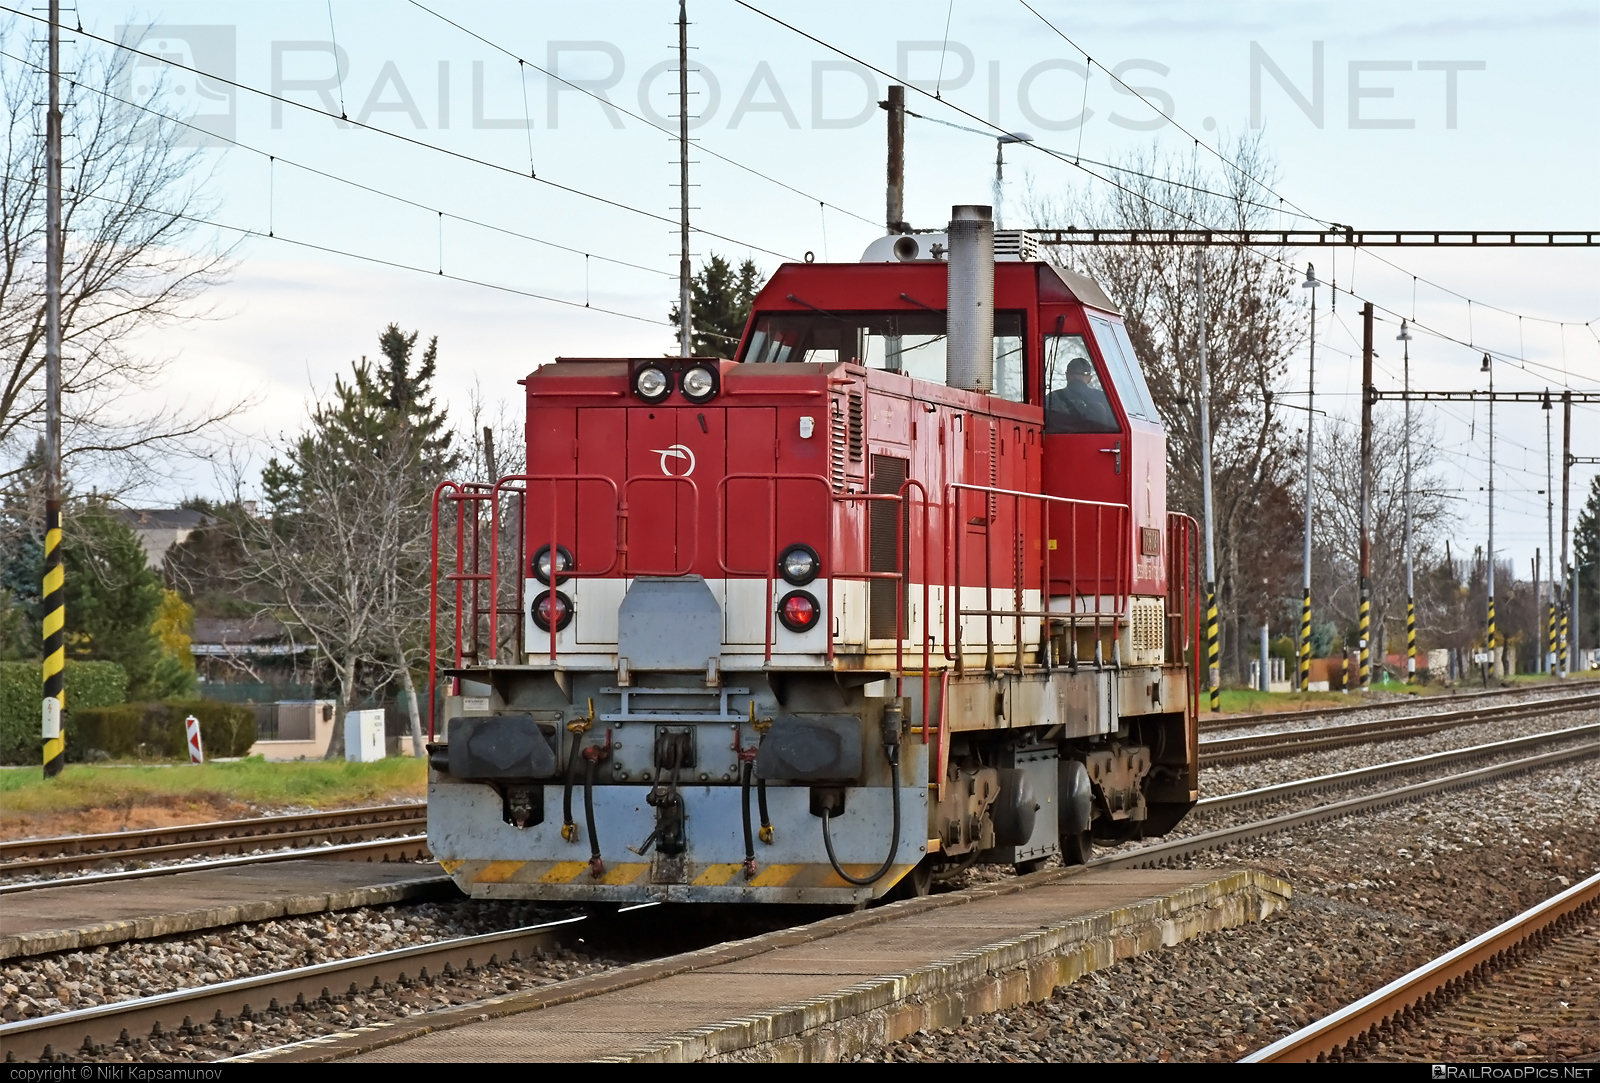 ŽOS Zvolen Class 736 - 736 104-1 operated by Železničná Spoločnost' Slovensko, a.s. #ZeleznicnaSpolocnostSlovensko #locomotive736 #zoszvolen #zoszvolen736 #zssk